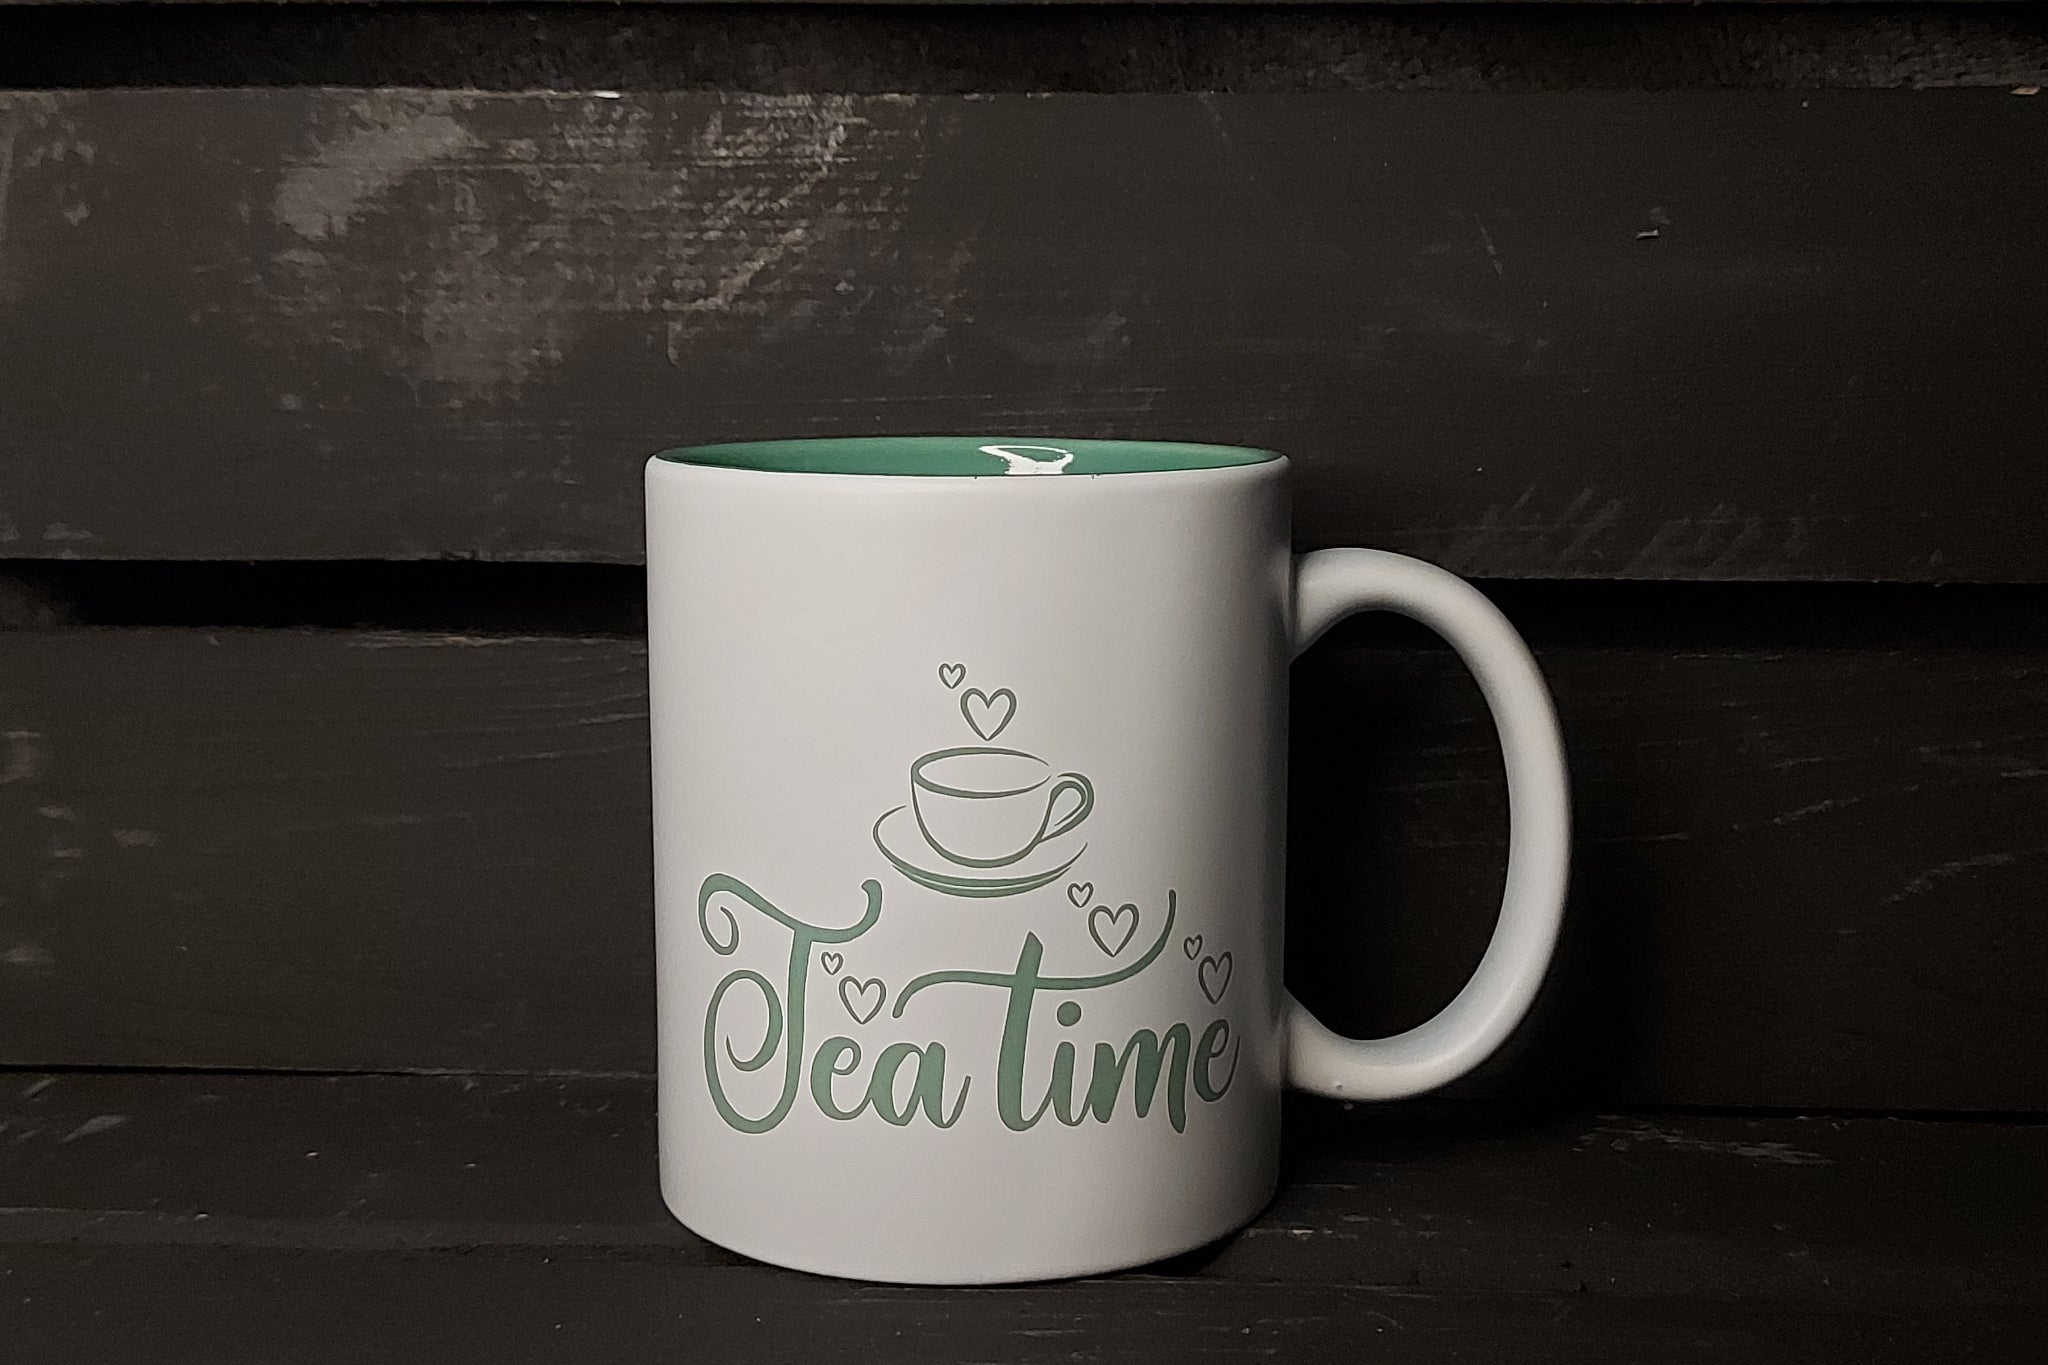 witte keramische mok met groene laser gravure voor koffie, thee of warme chocolademelk. Toffe koffie en thee quotes die duurzaam en lokaal gegraveerd worden.